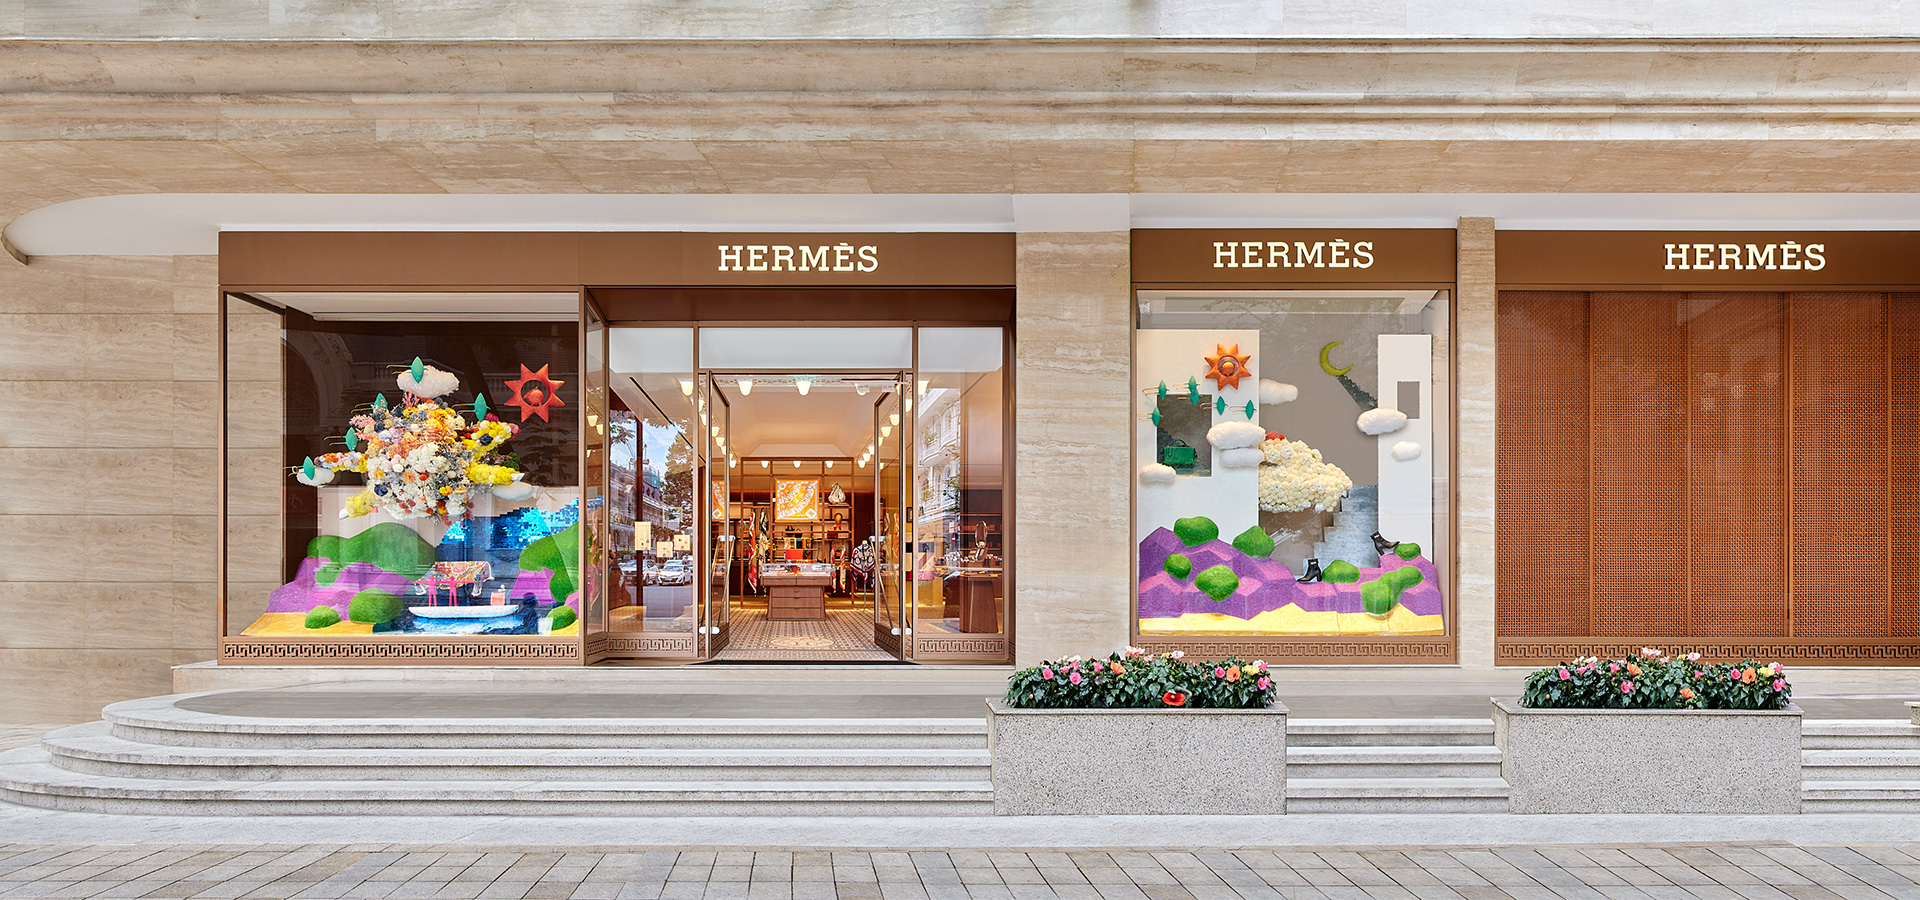 Hermès khai trương cửa hàng mới mở rộng tại Union Square